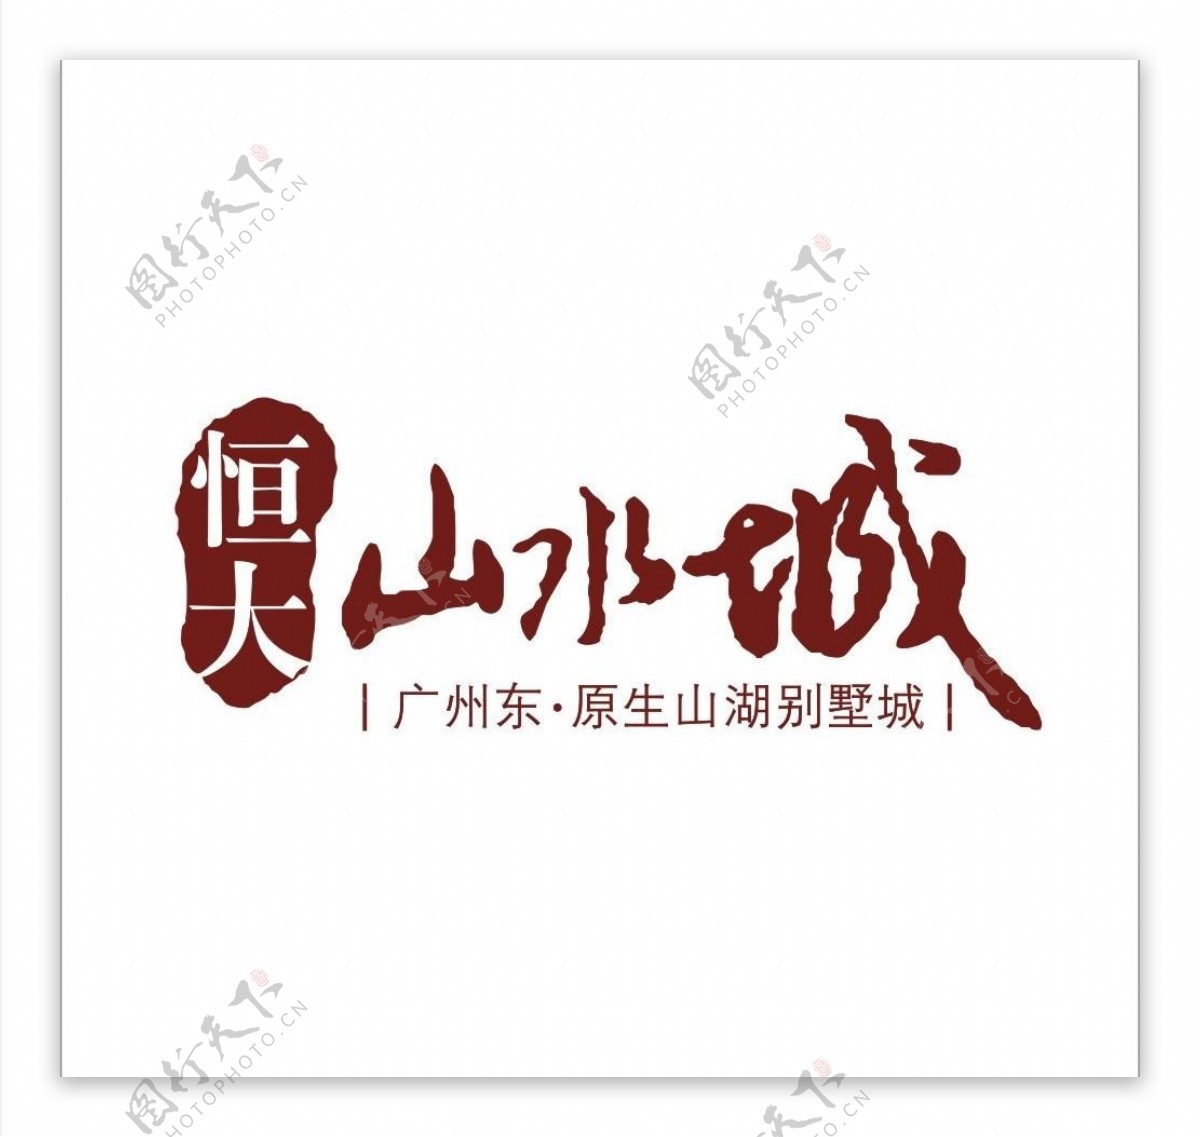 恒大山水城logo图片